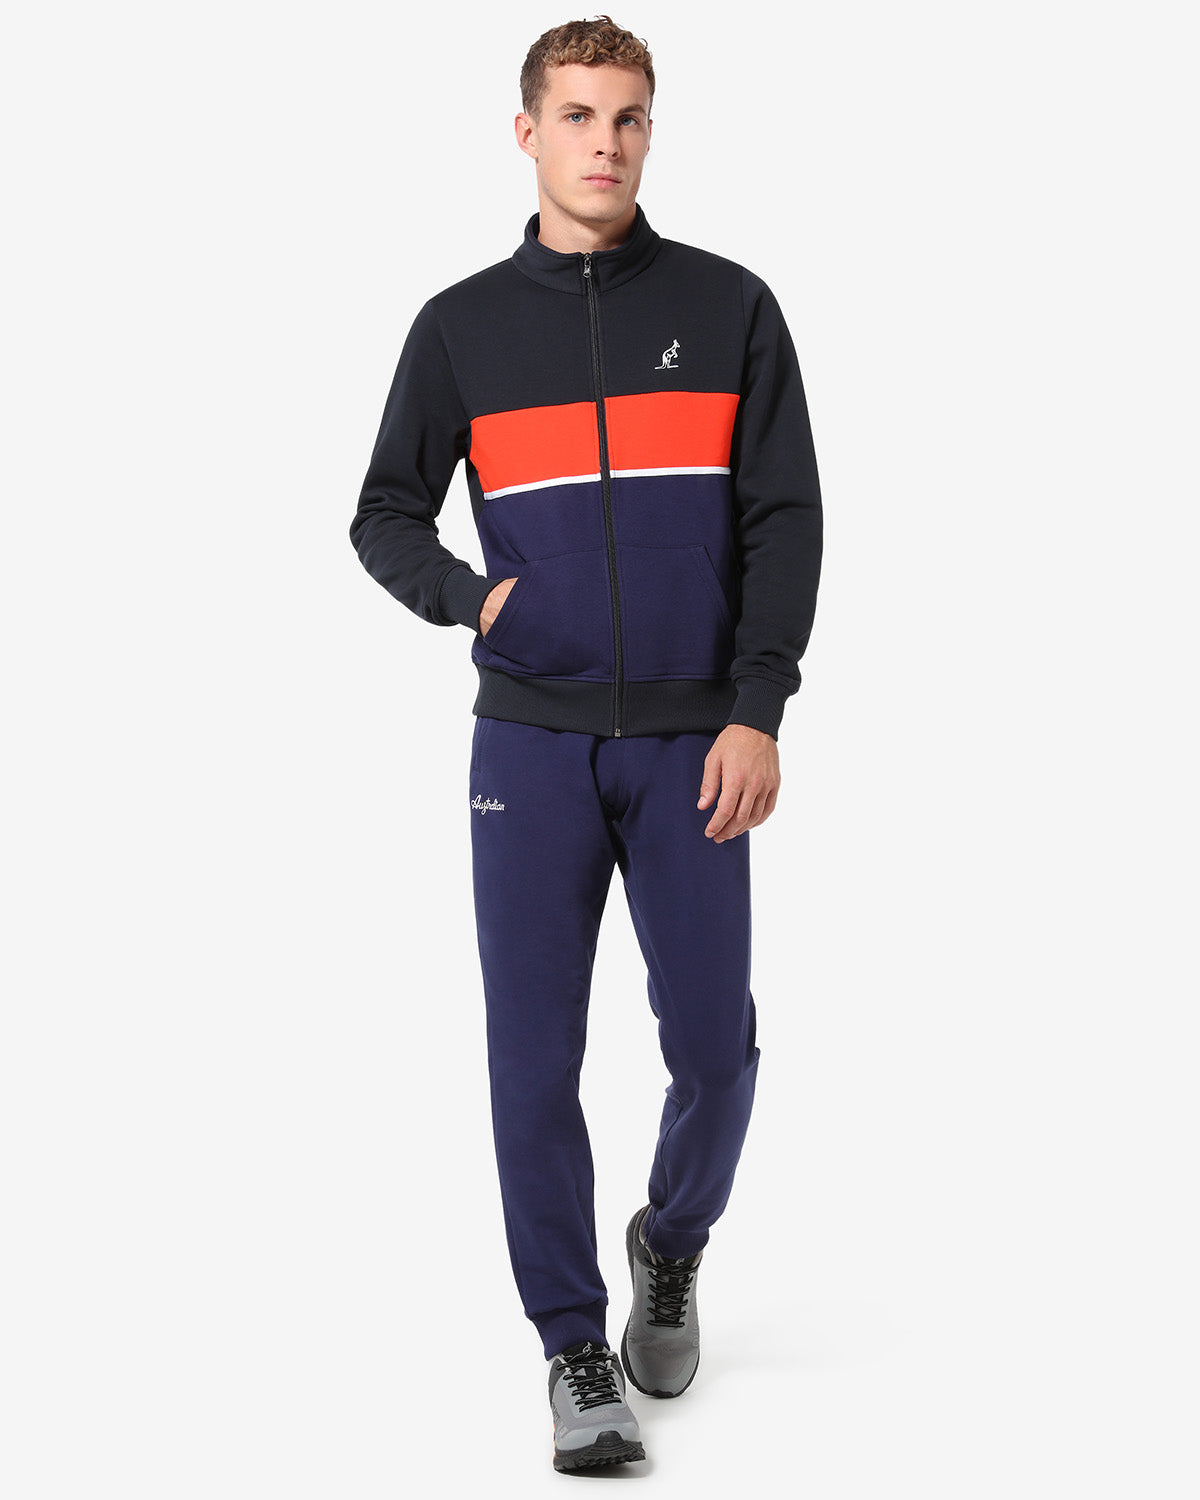 Winter Fleece Jacket: Australian Sportswear